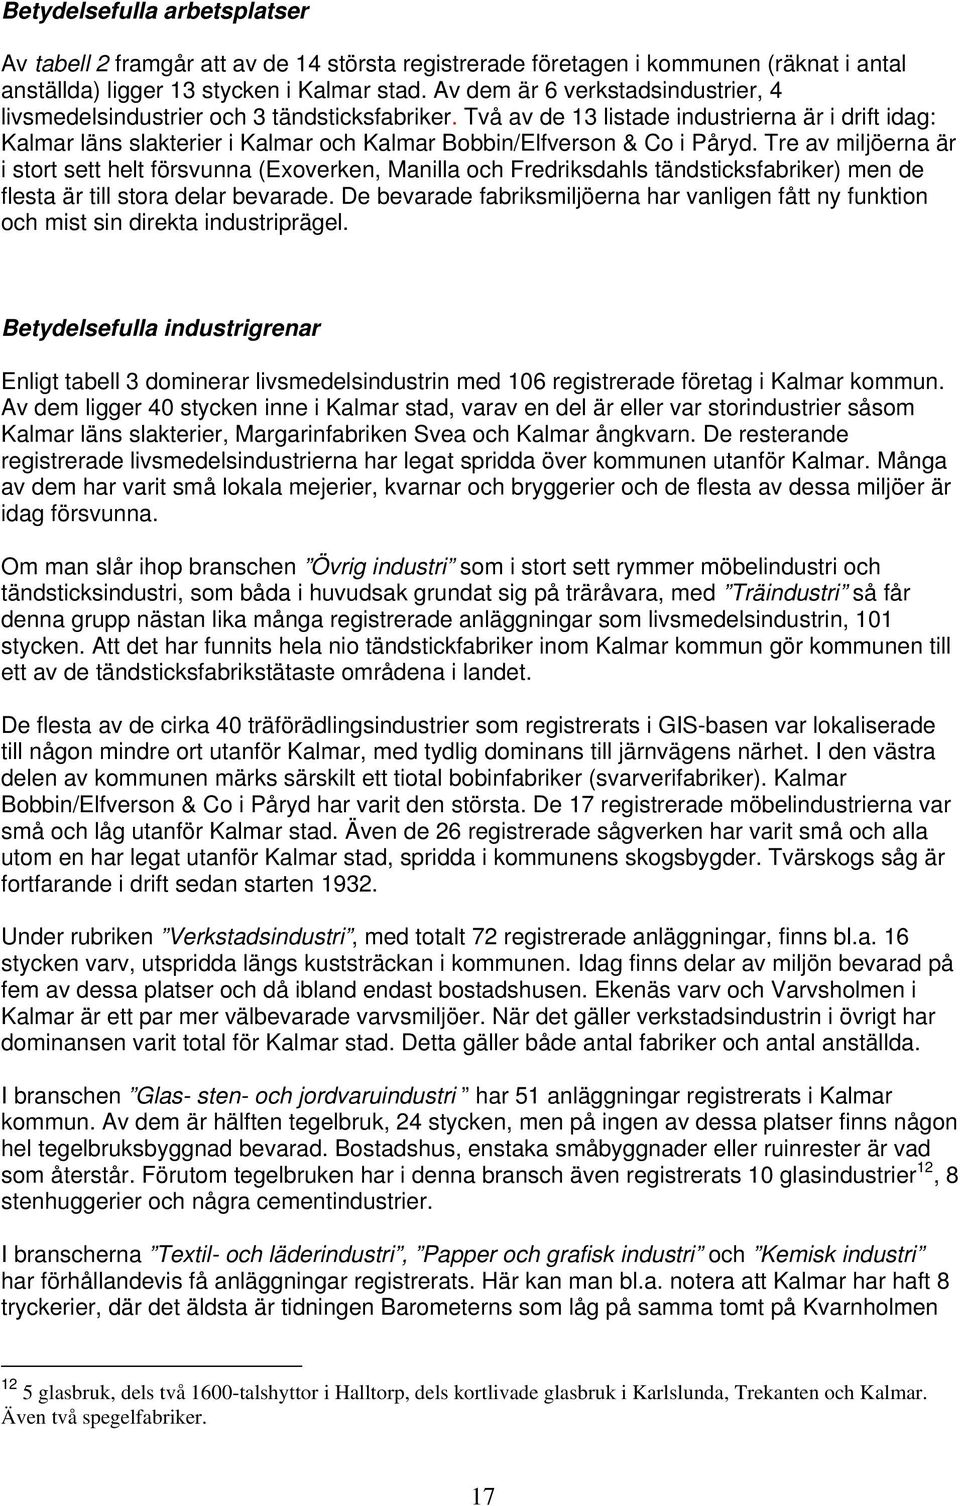 Två av de 13 listade industrierna är i drift idag: Kalmar läns slakterier i Kalmar och Kalmar Bobbin/Elfverson & Co i Påryd.